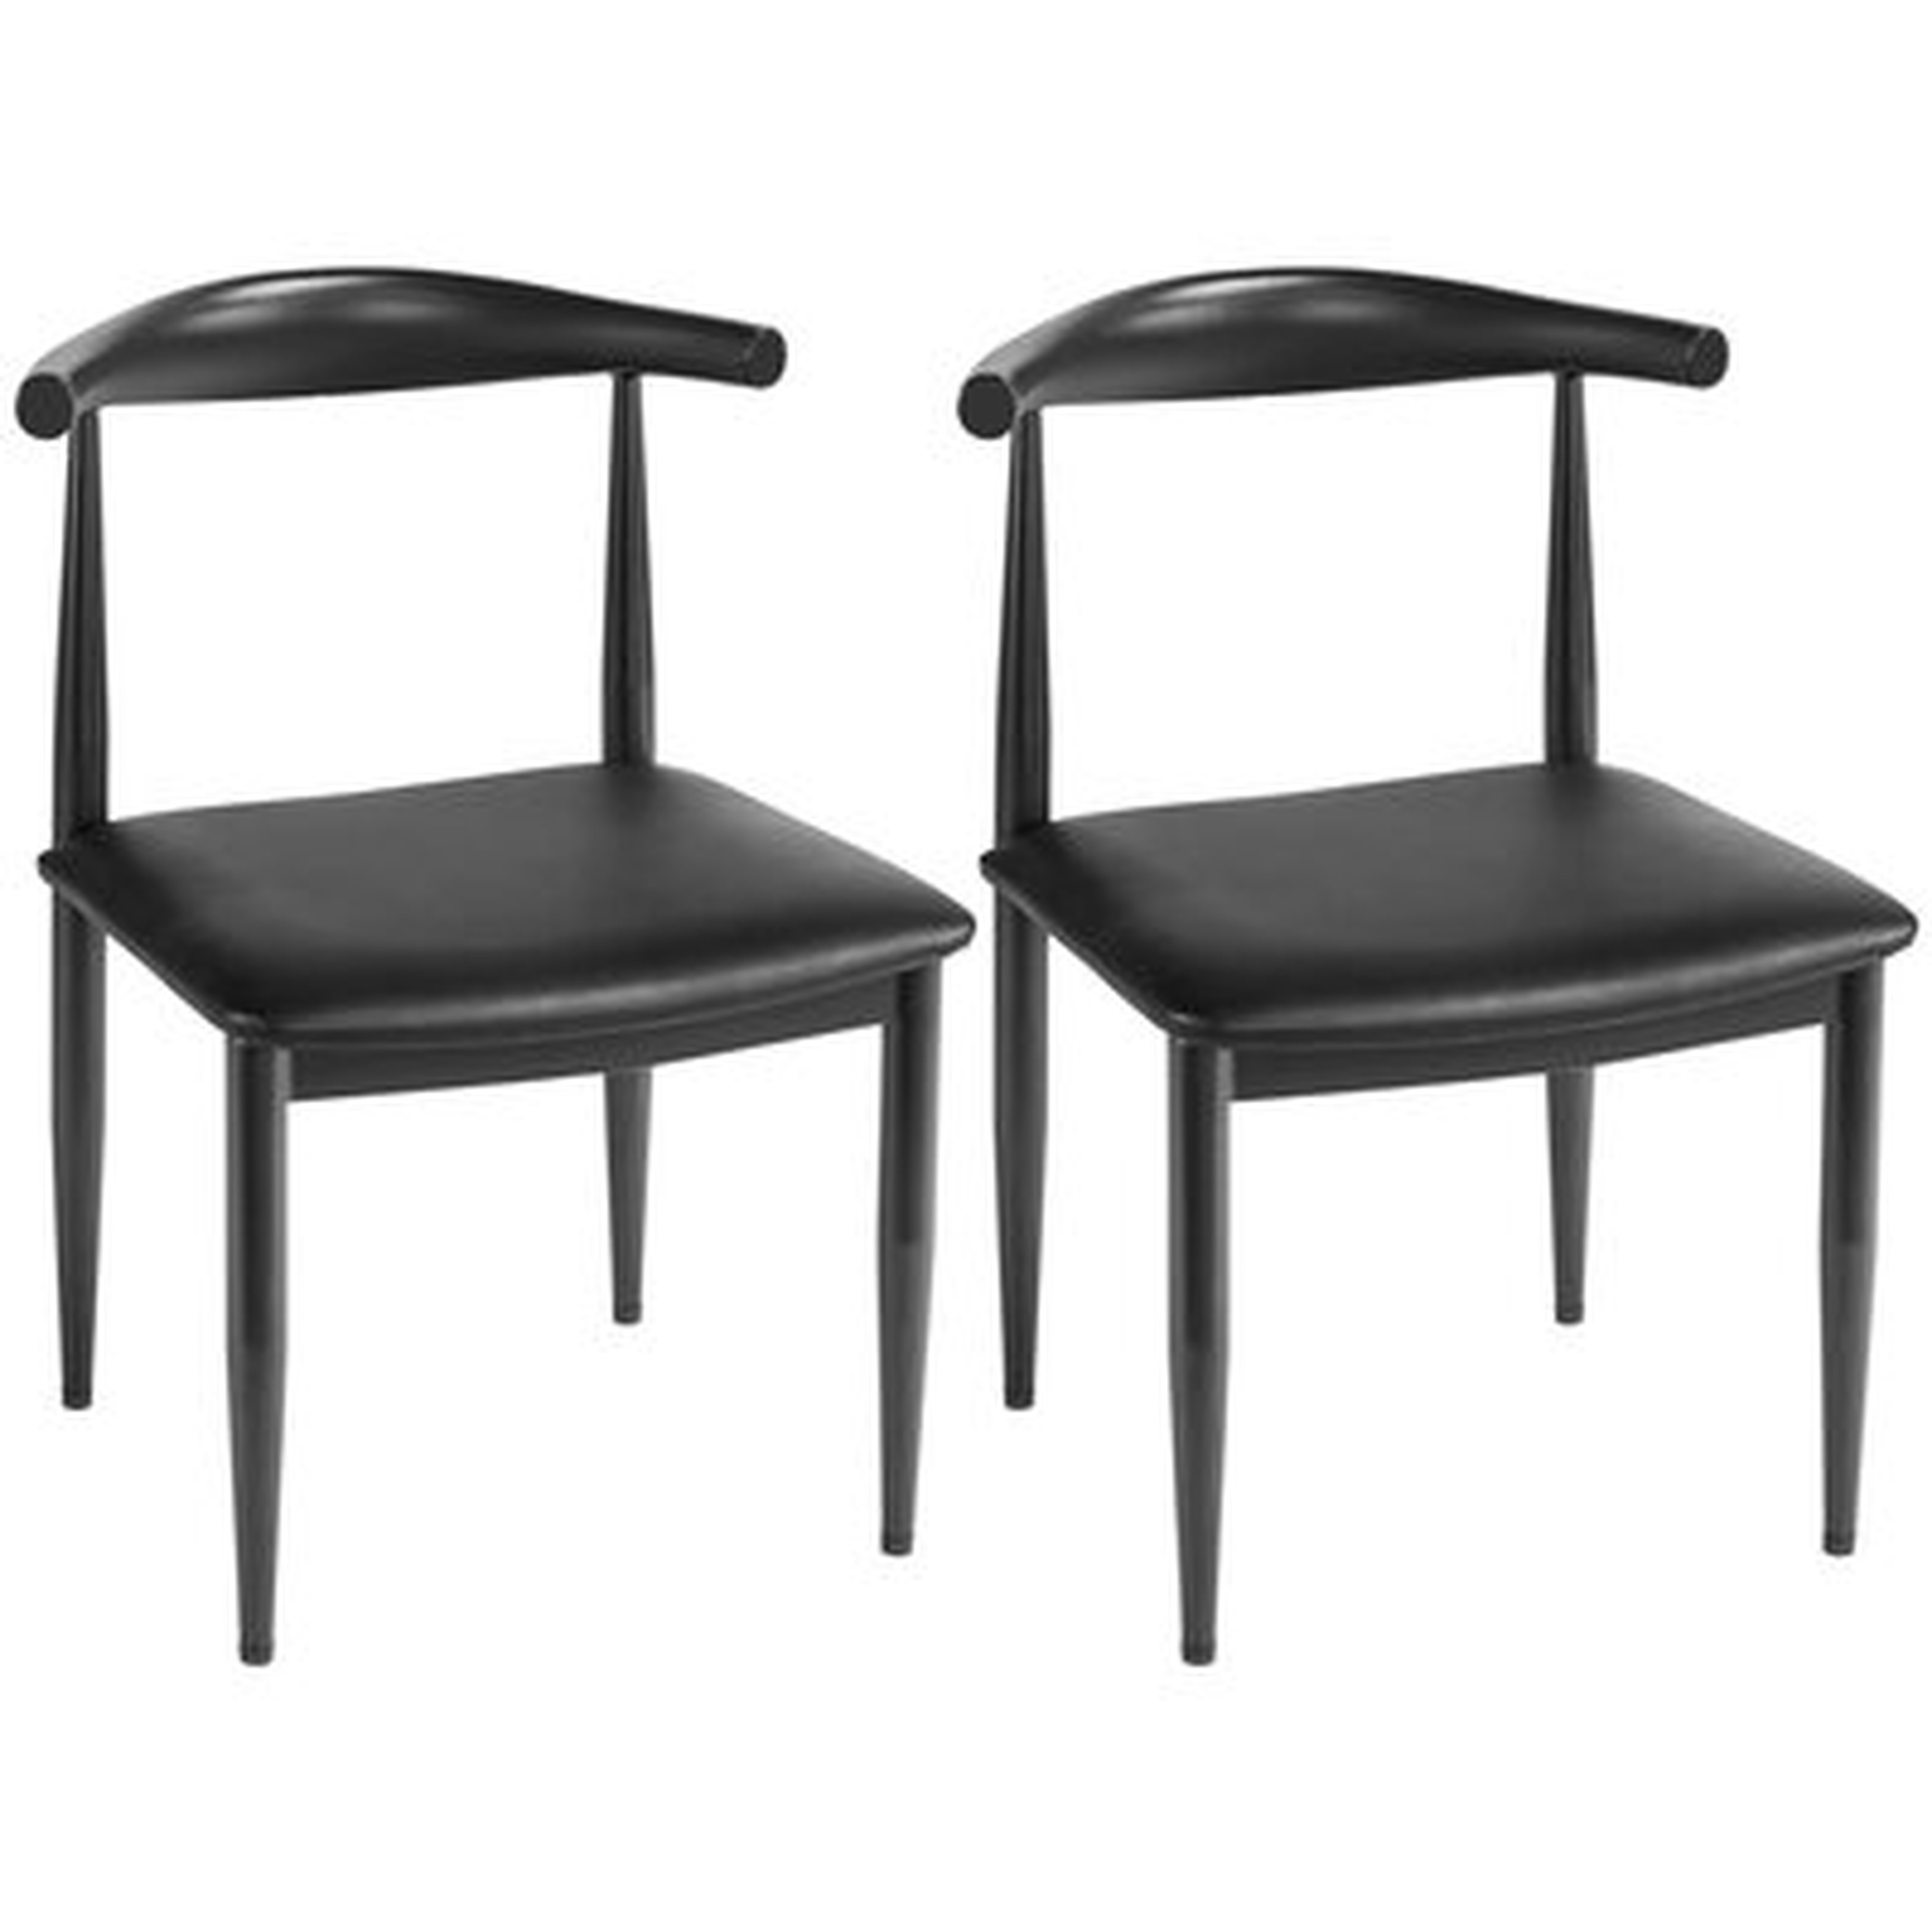 Albia Metal Side Chair in Black (Set of 2) - Wayfair